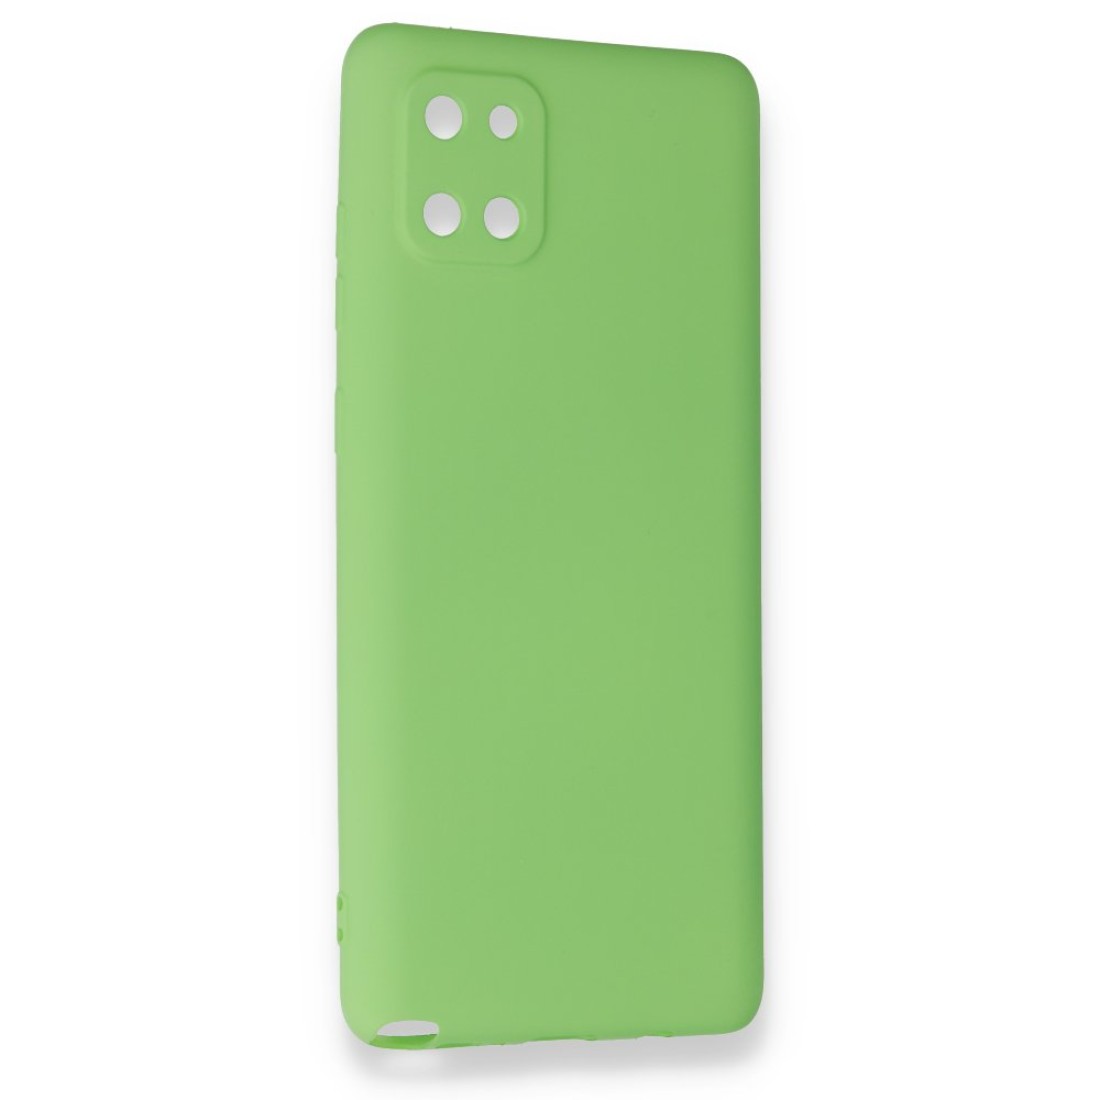 Samsung Galaxy A81 / Note 10 Lite Kılıf Premium Rubber Silikon - Yeşil